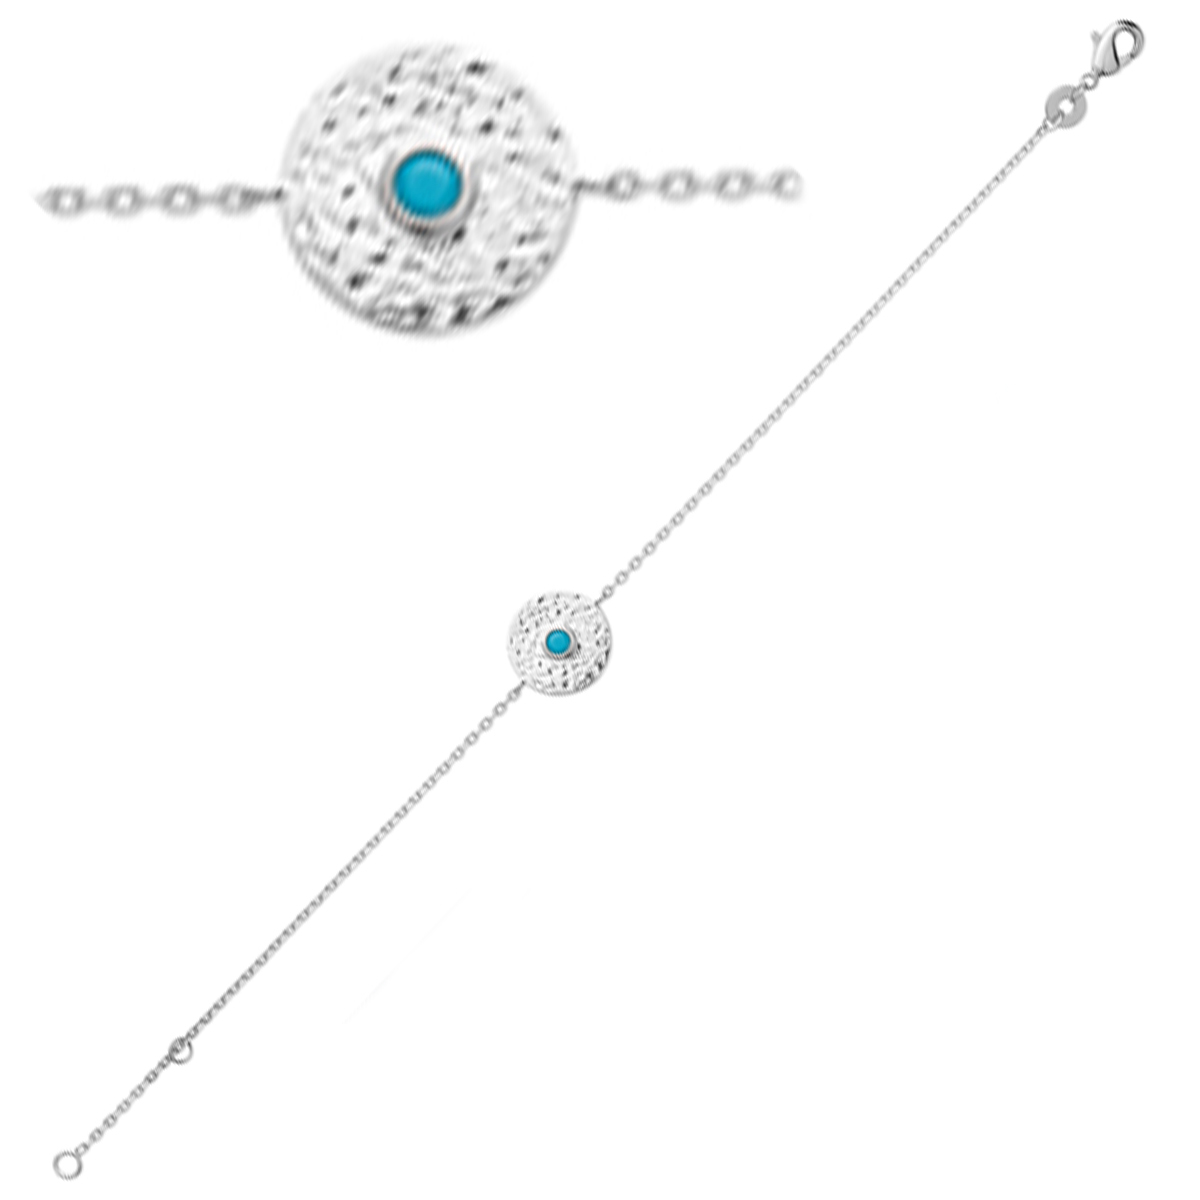 Bracelet Argent \'Cléopatra\' turquoise argenté (rhodié) - 13 mm - [Q6613]